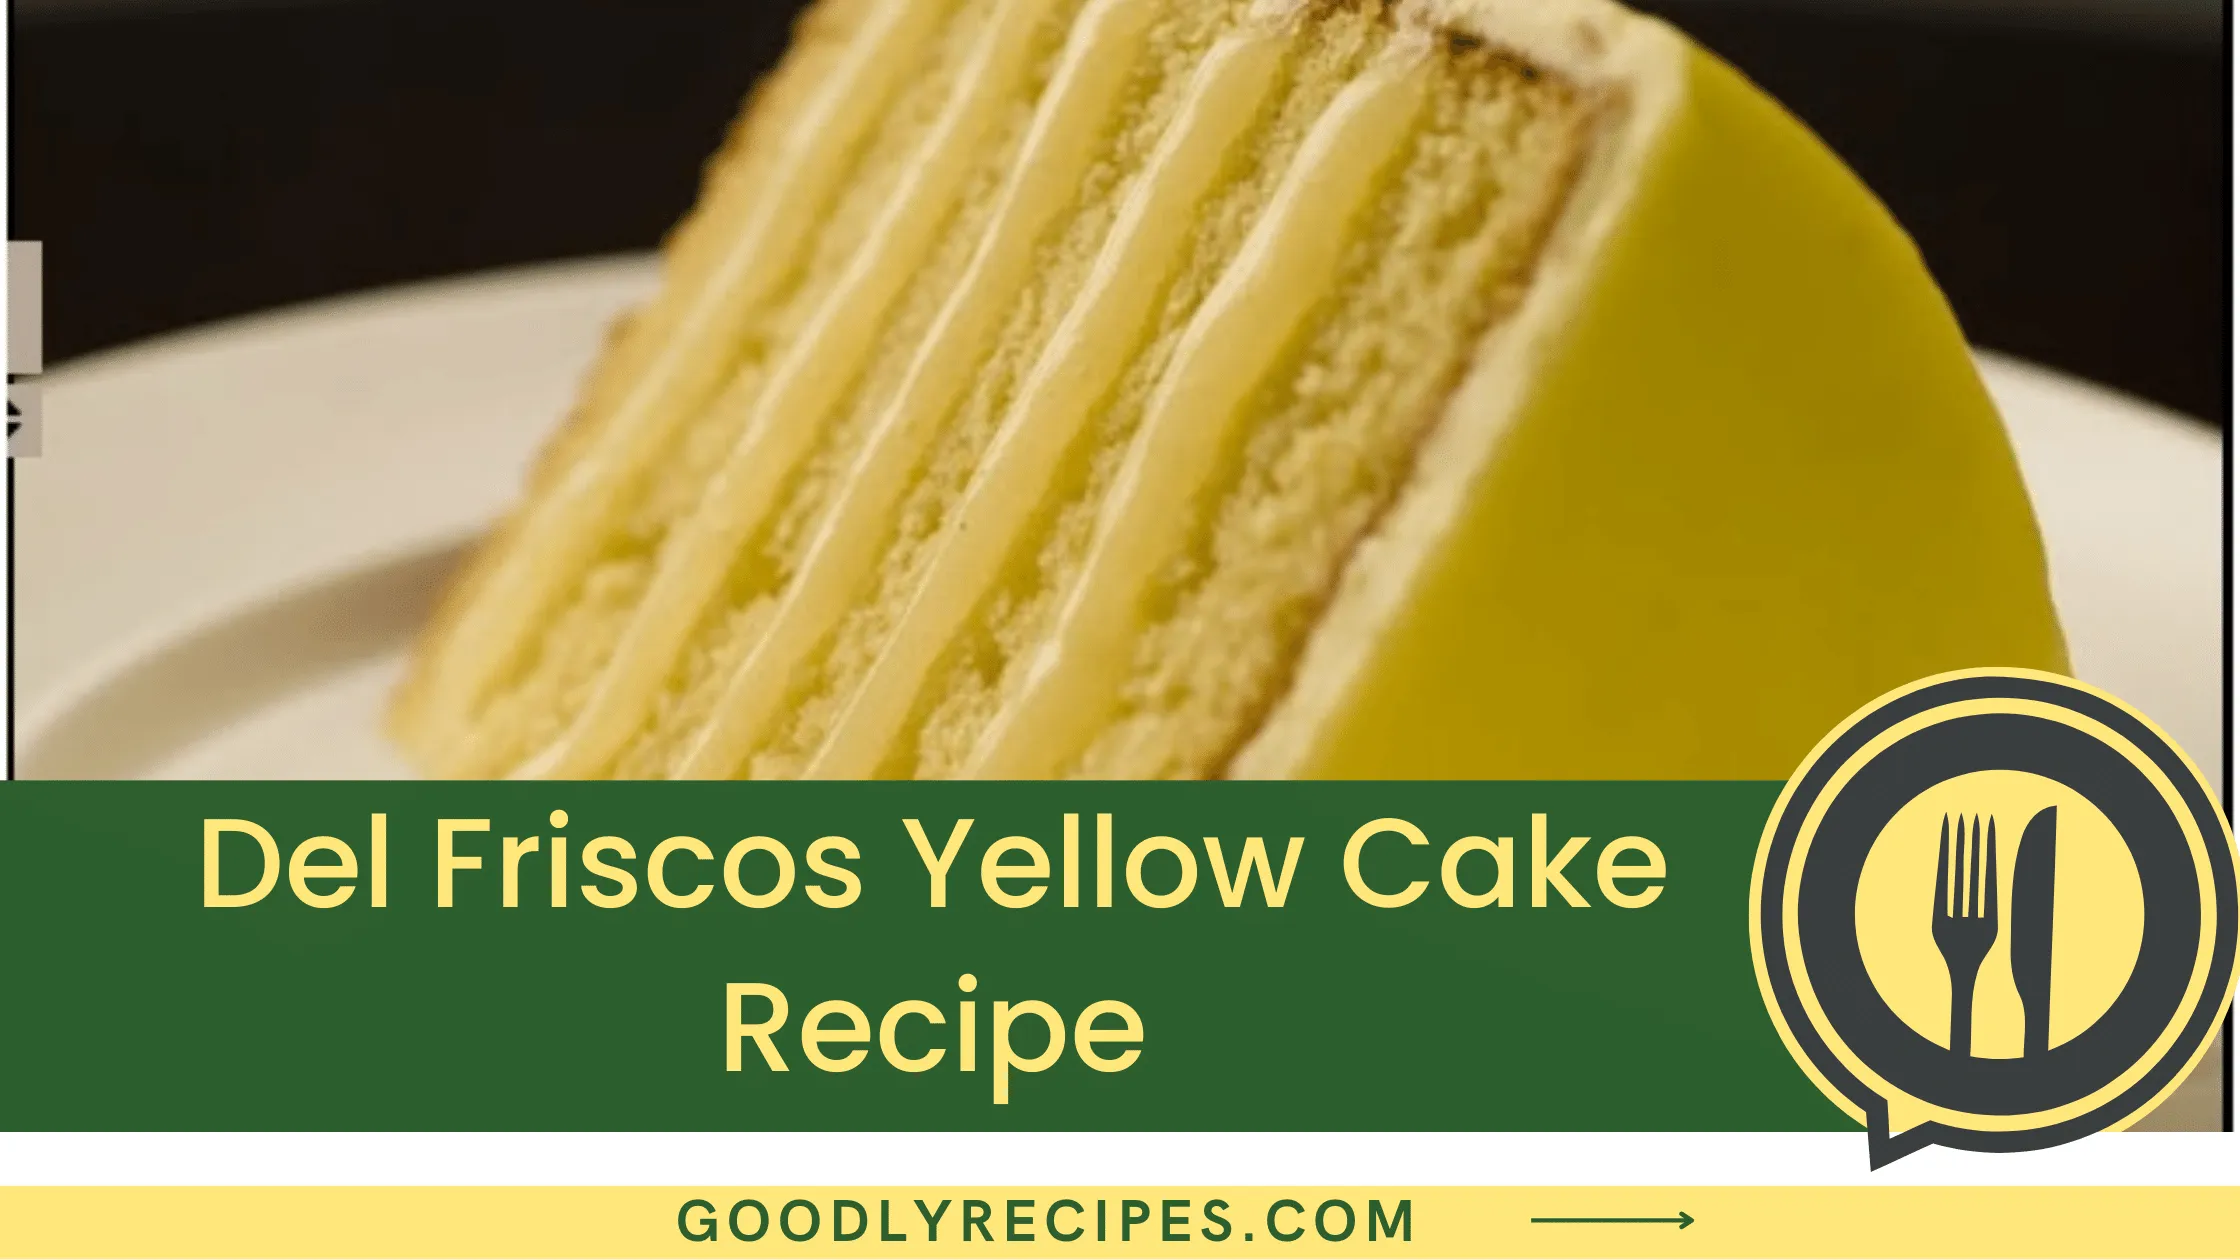 Del Frisco's Yellow Cake Recipe